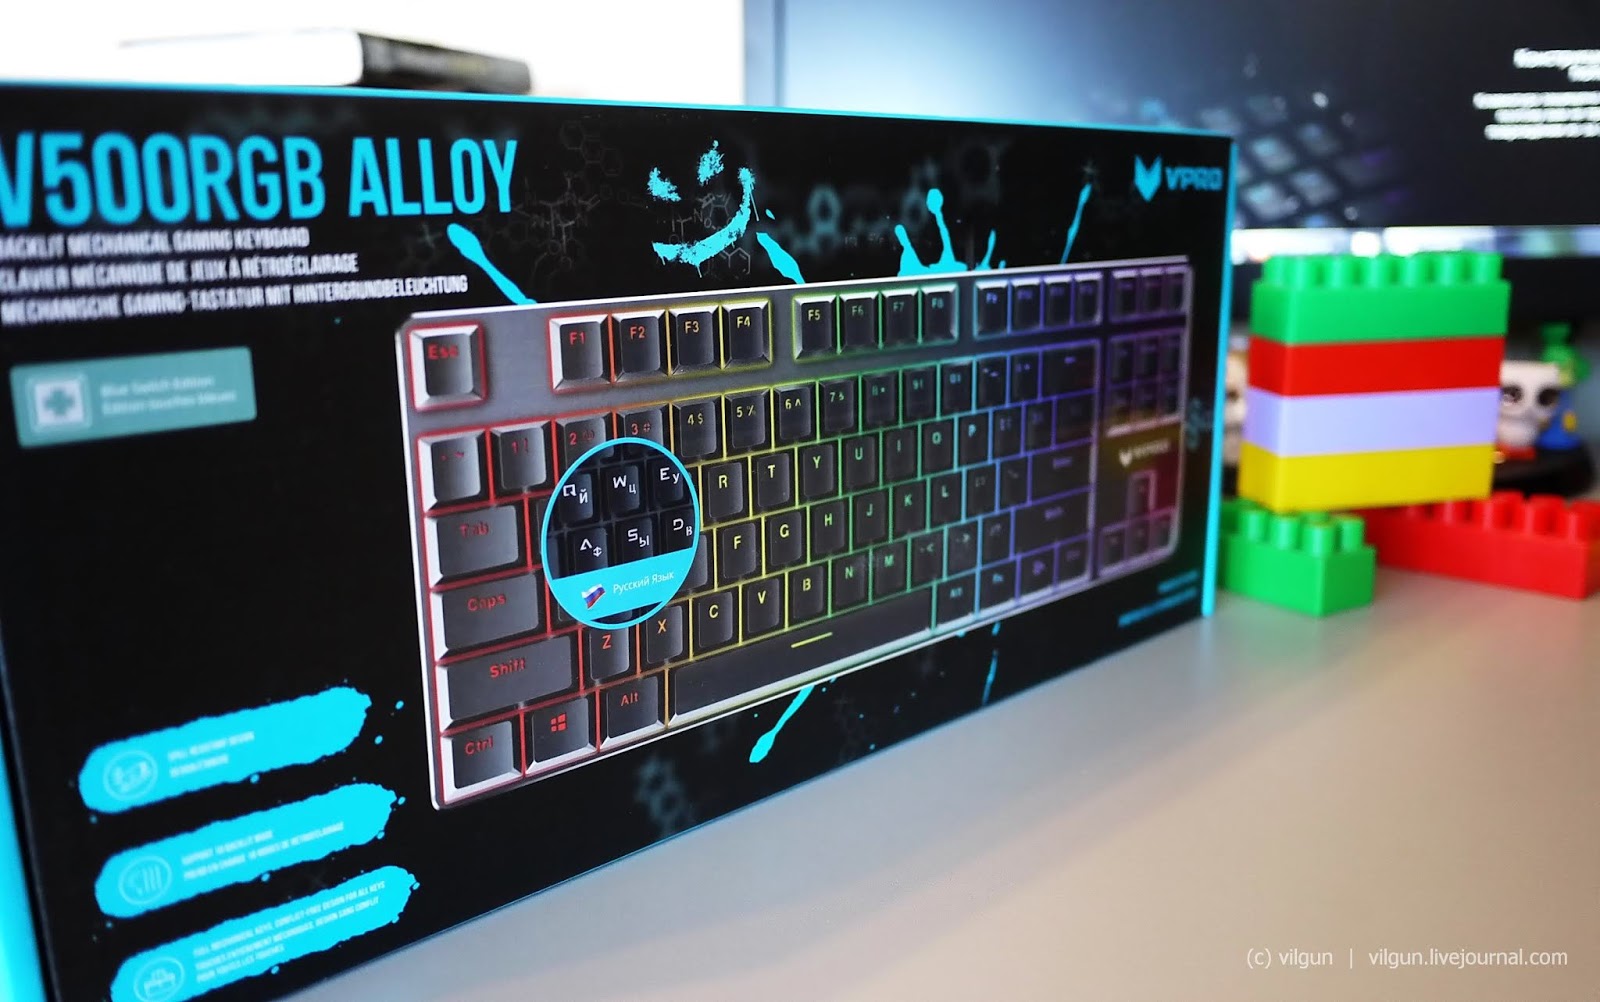 Игровая клавиатура | Rapoo V500RGB Alloy 